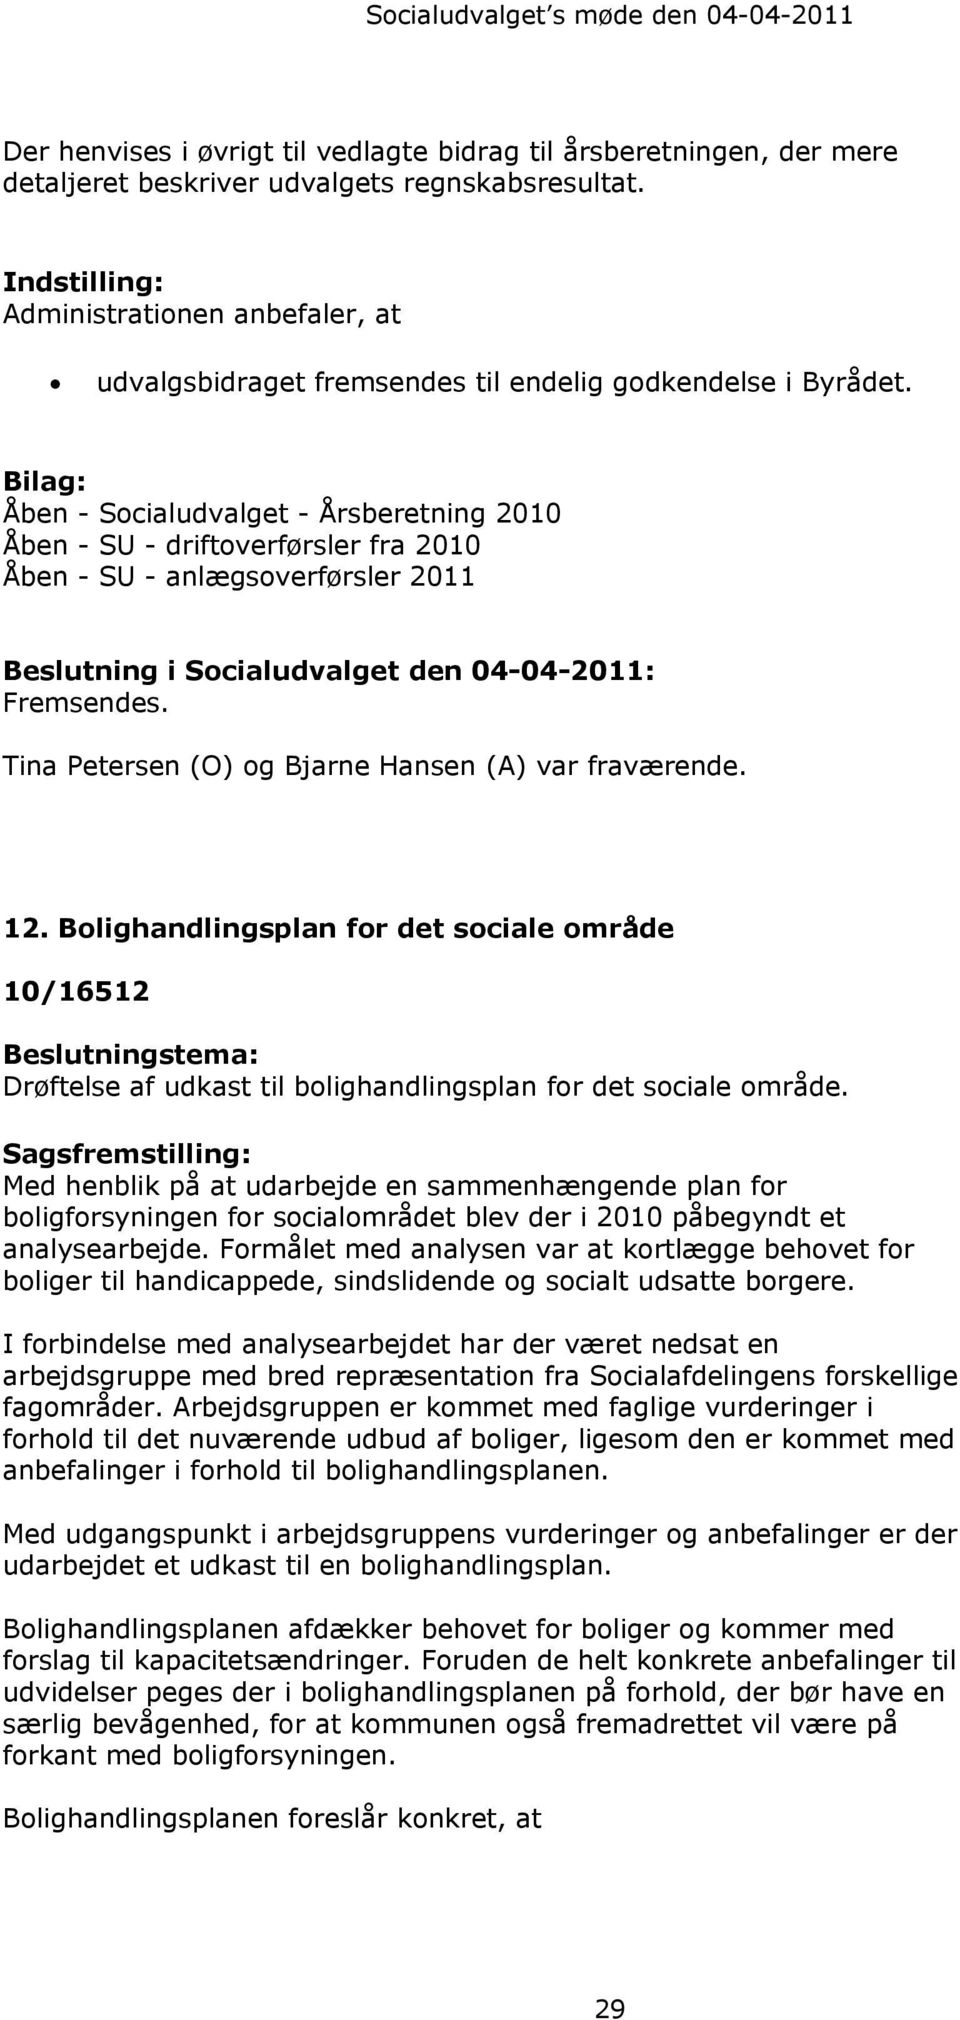 Bilag: Åben - Socialudvalget - Årsberetning 2010 Åben - SU - driftoverførsler fra 2010 Åben - SU - anlægsoverførsler 2011 Beslutning i Socialudvalget den 04-04-2011: Fremsendes.